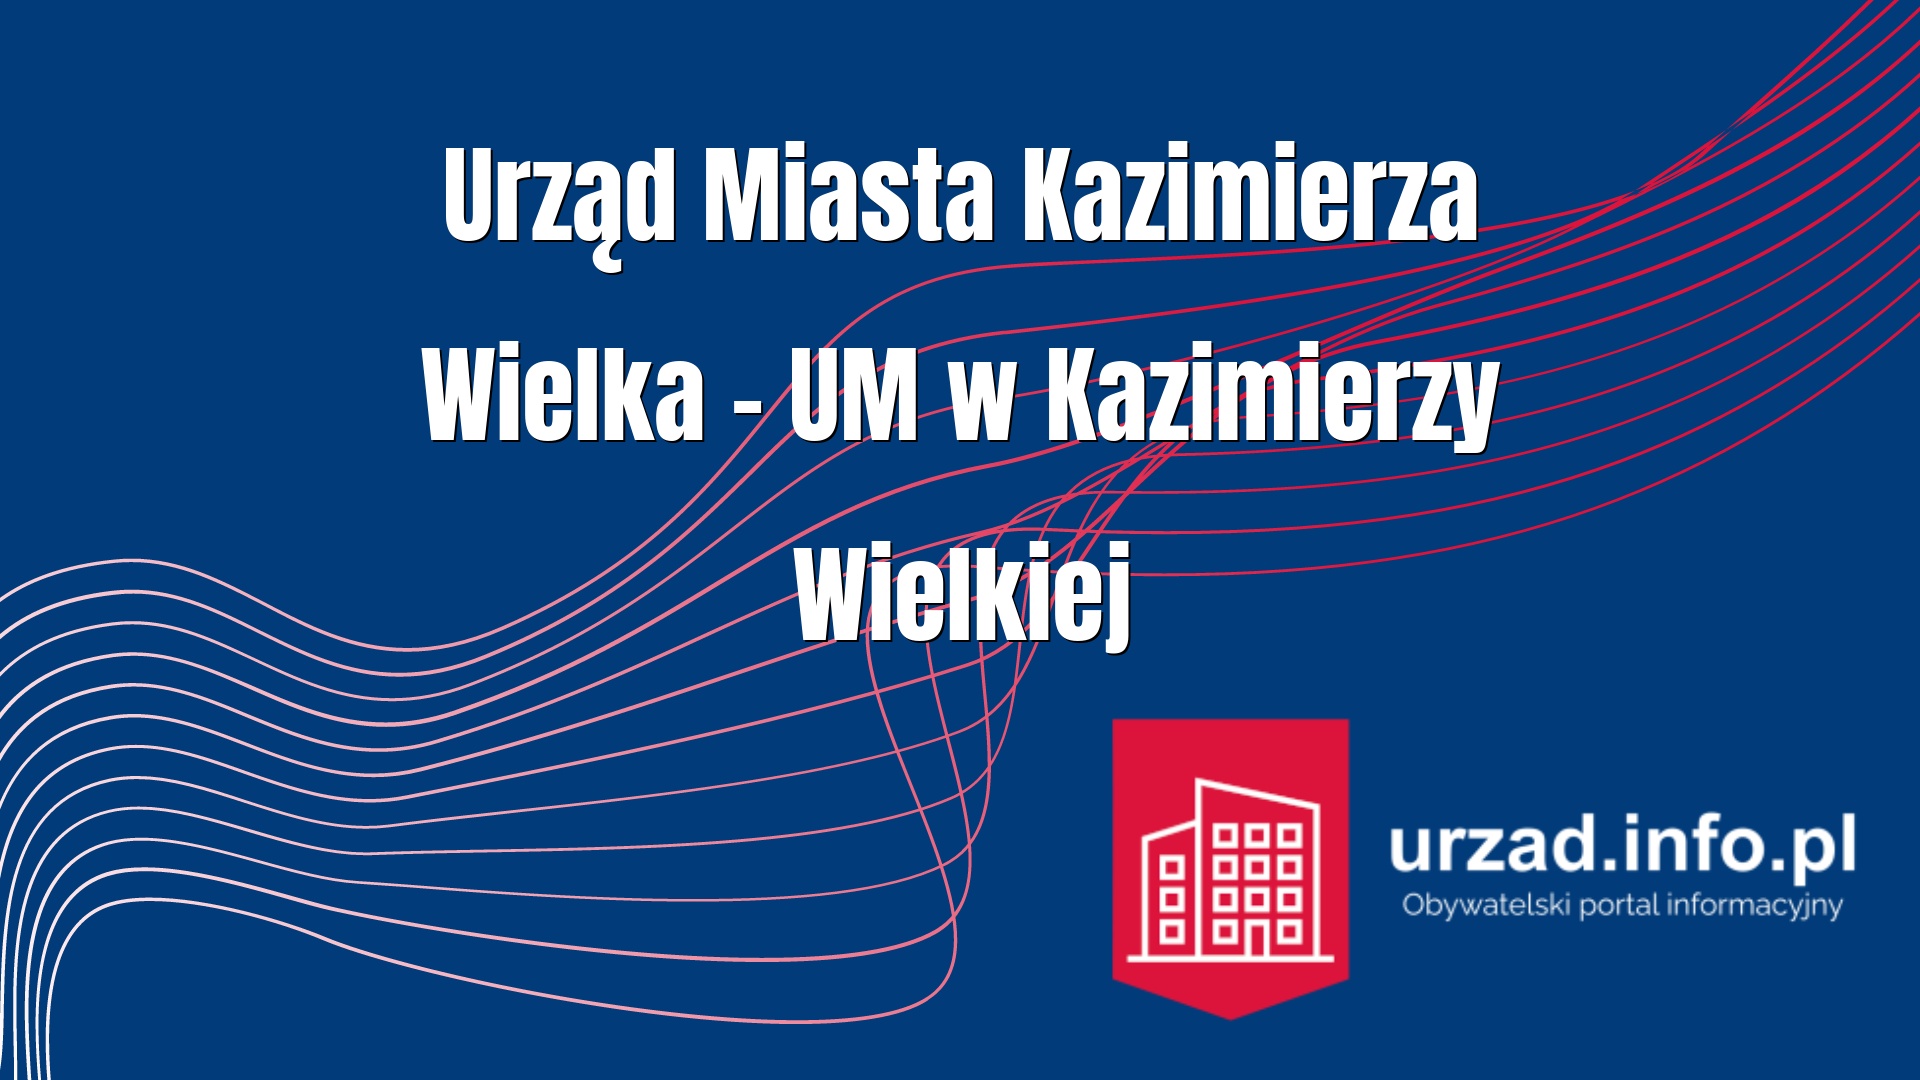 Urząd Miasta Kazimierza Wielka – UM w Kazimierzy Wielkiej